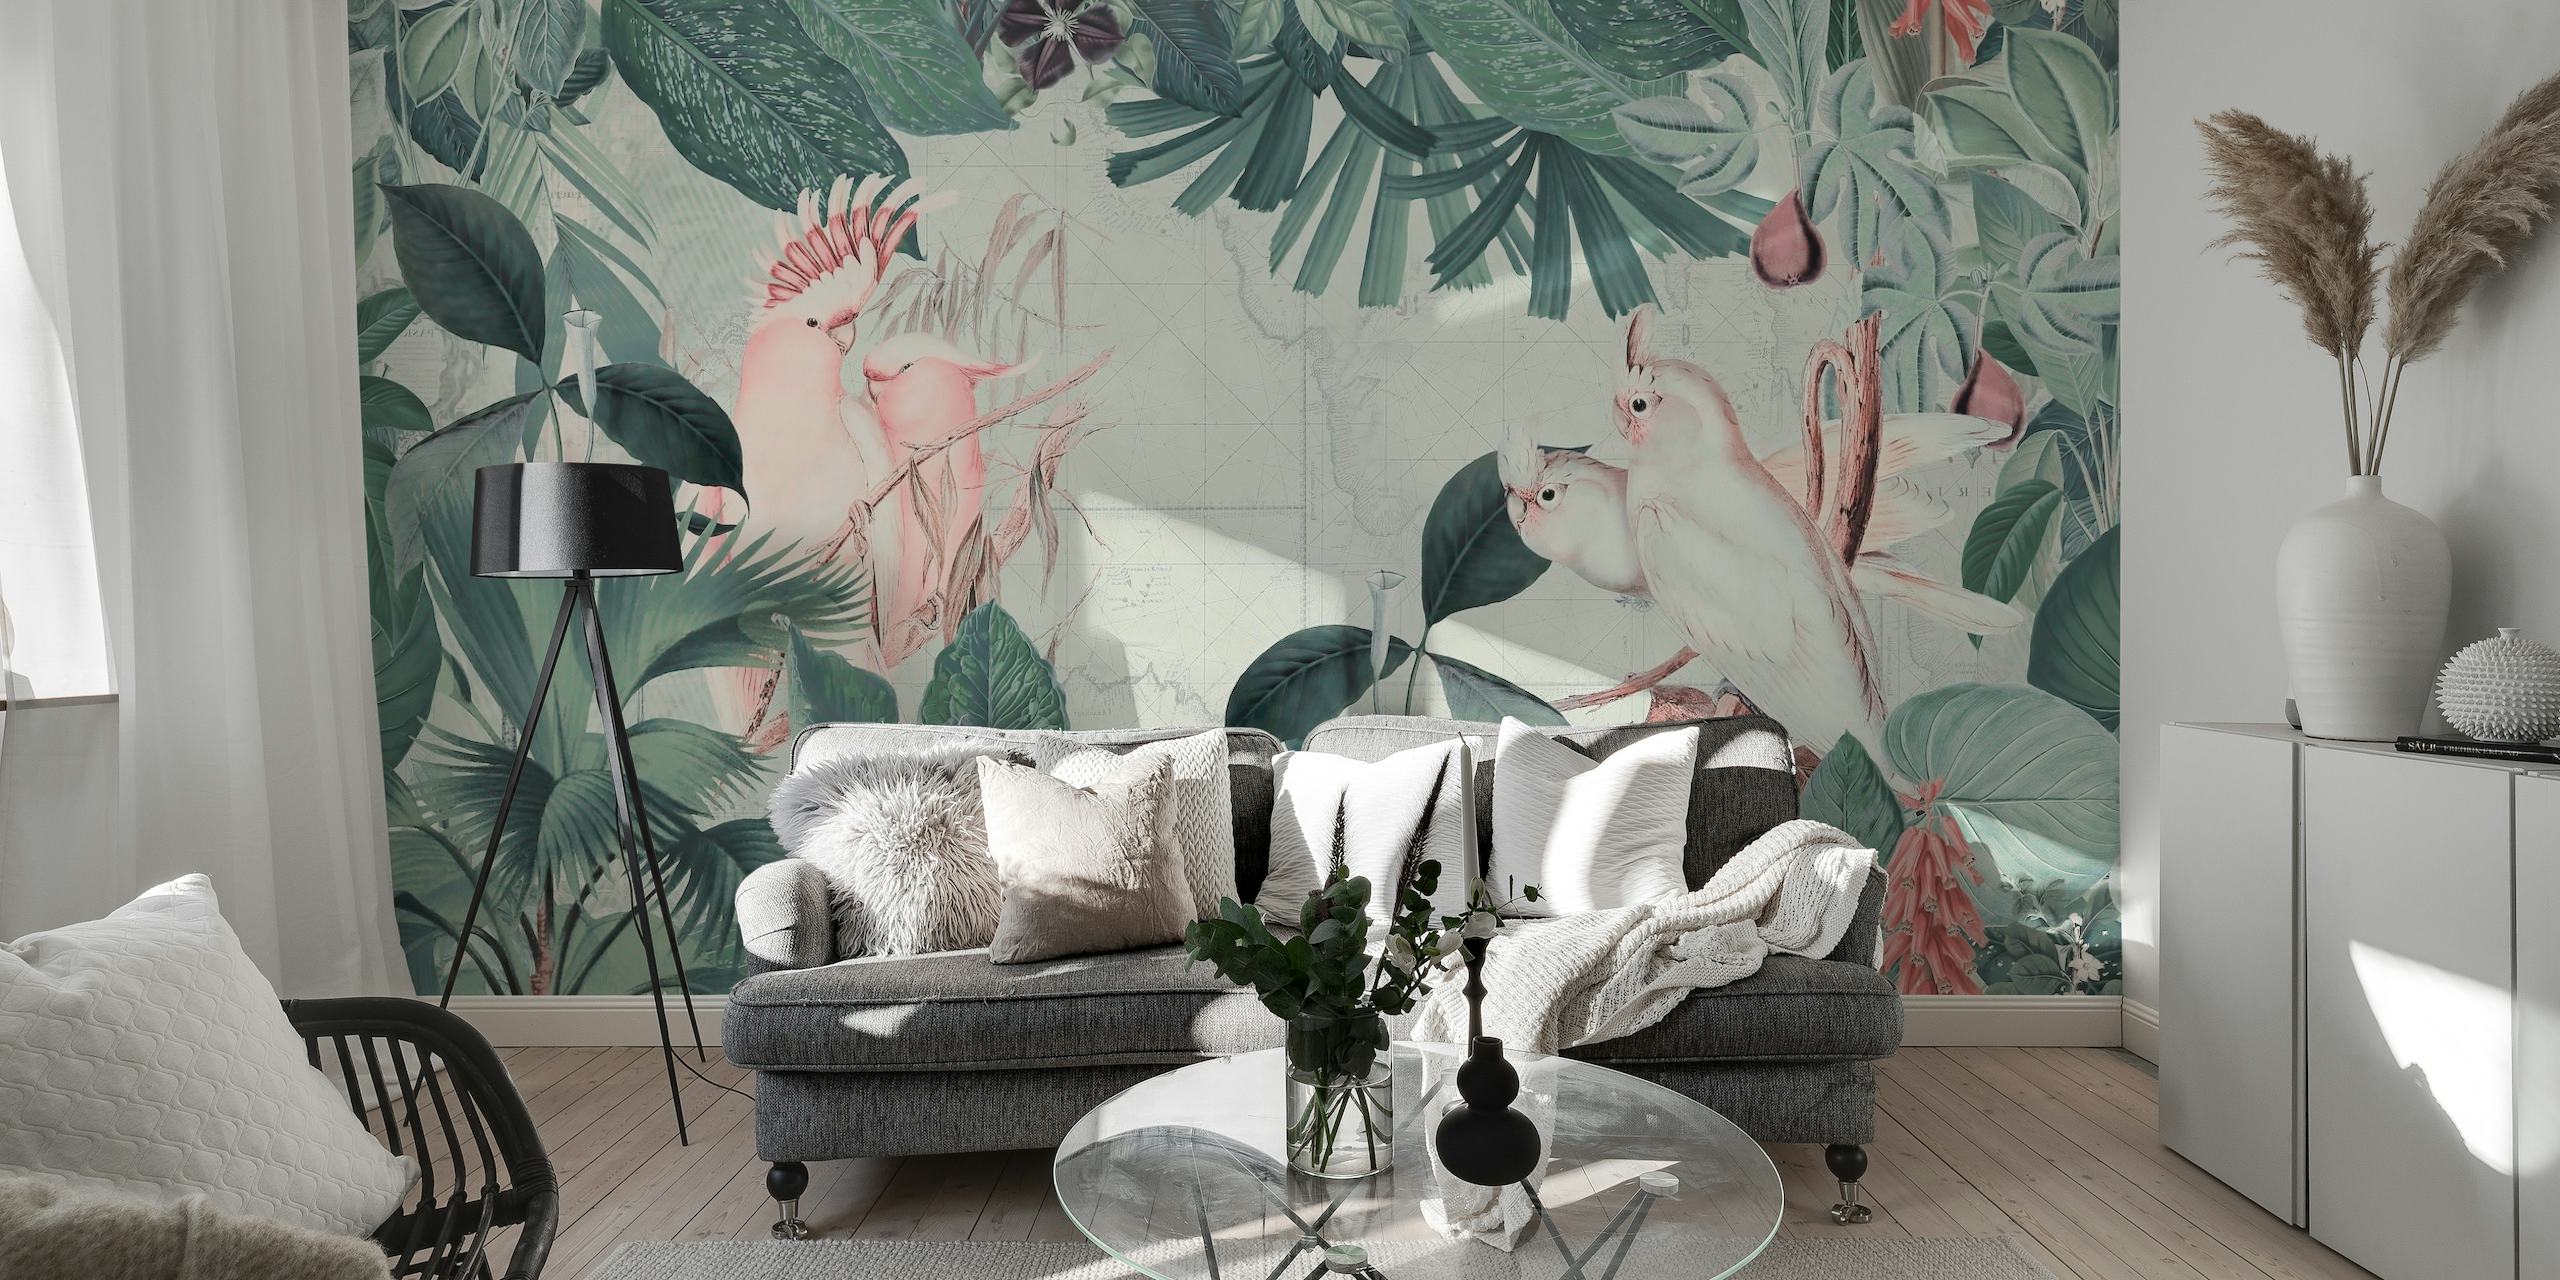 Zidna slika u vintage stilu s kakaduima i tropskim lišćem u pastelnim bojama